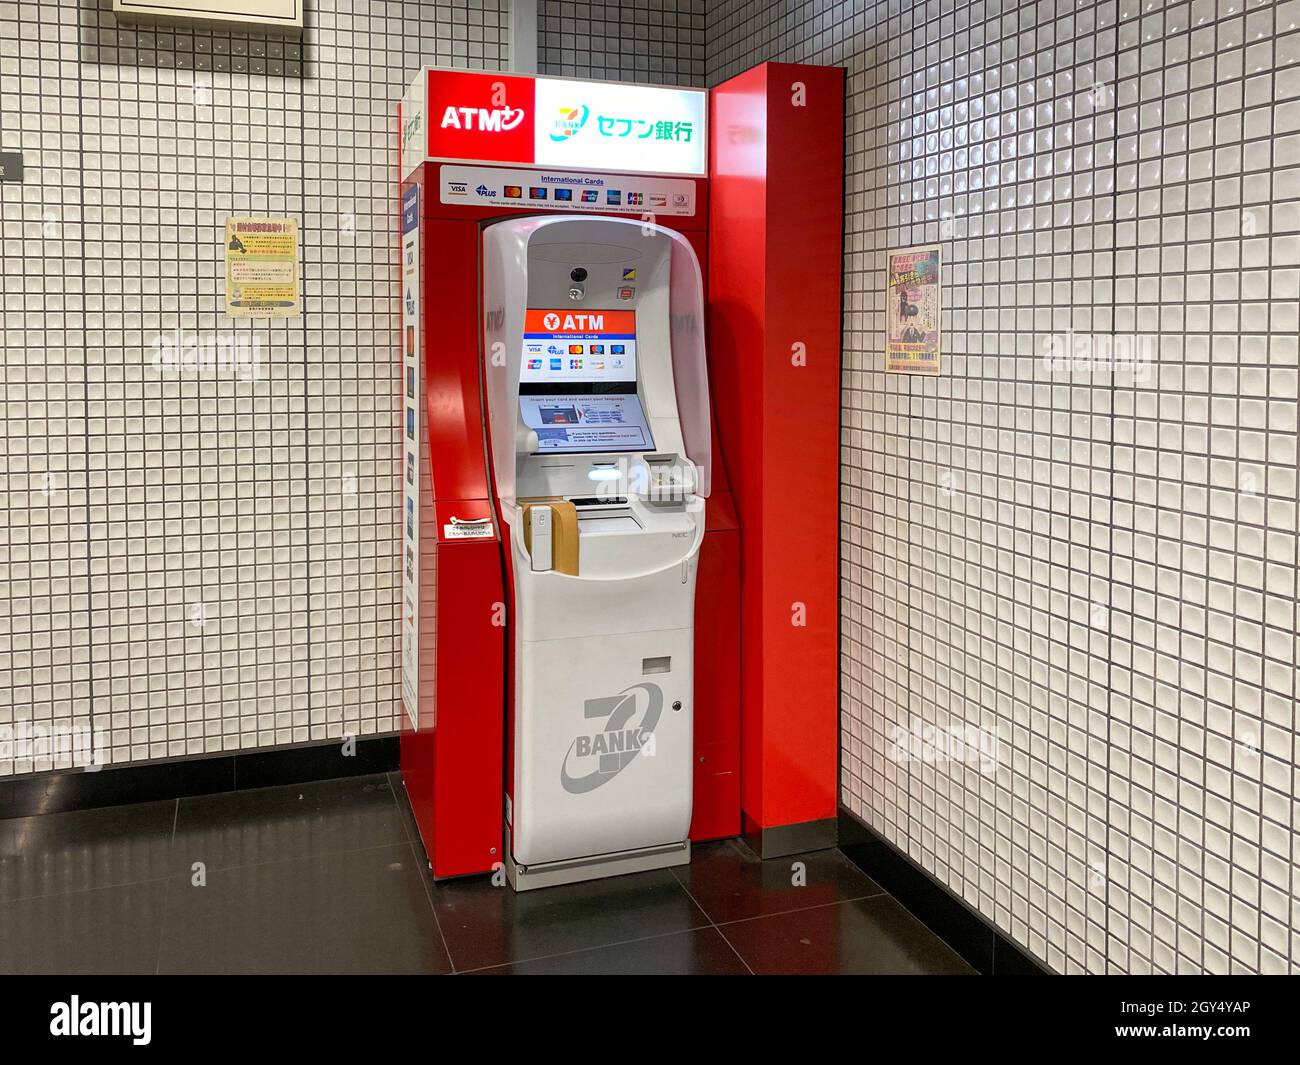 Tokyo, Japon - 21 novembre 2019 : vue de sept guichets automatiques bancaires ATM à l'aéroport de Narita Banque D'Images